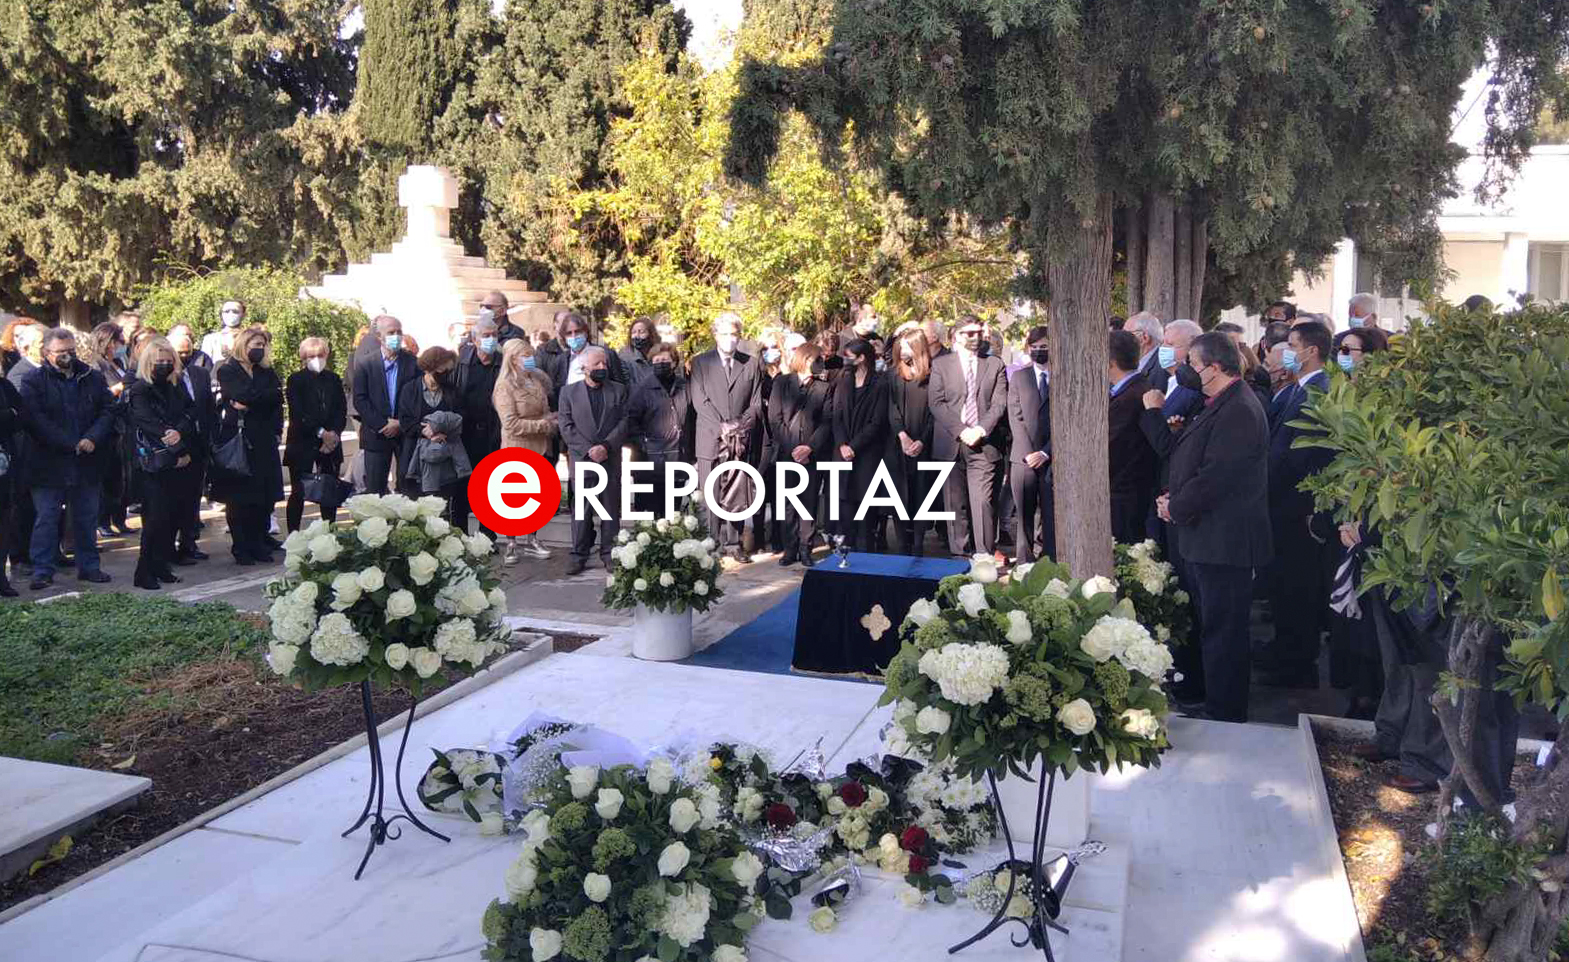 Φώφη Γεννηματά: Στο Α’ Νεκροταφείο τελέστηκε το 40ήμερο μνημόσυνο